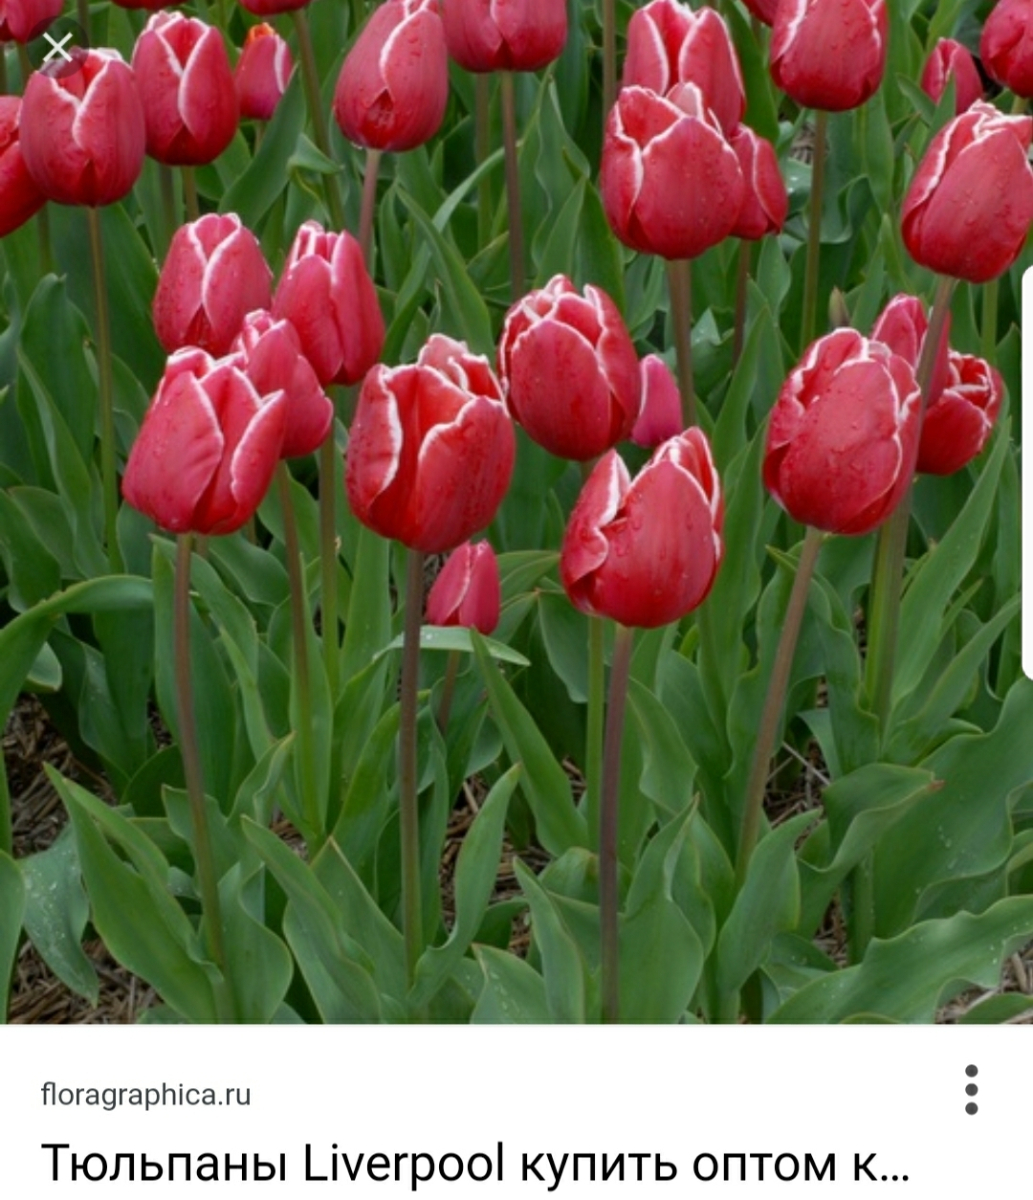 тюльпан лех валенса фото